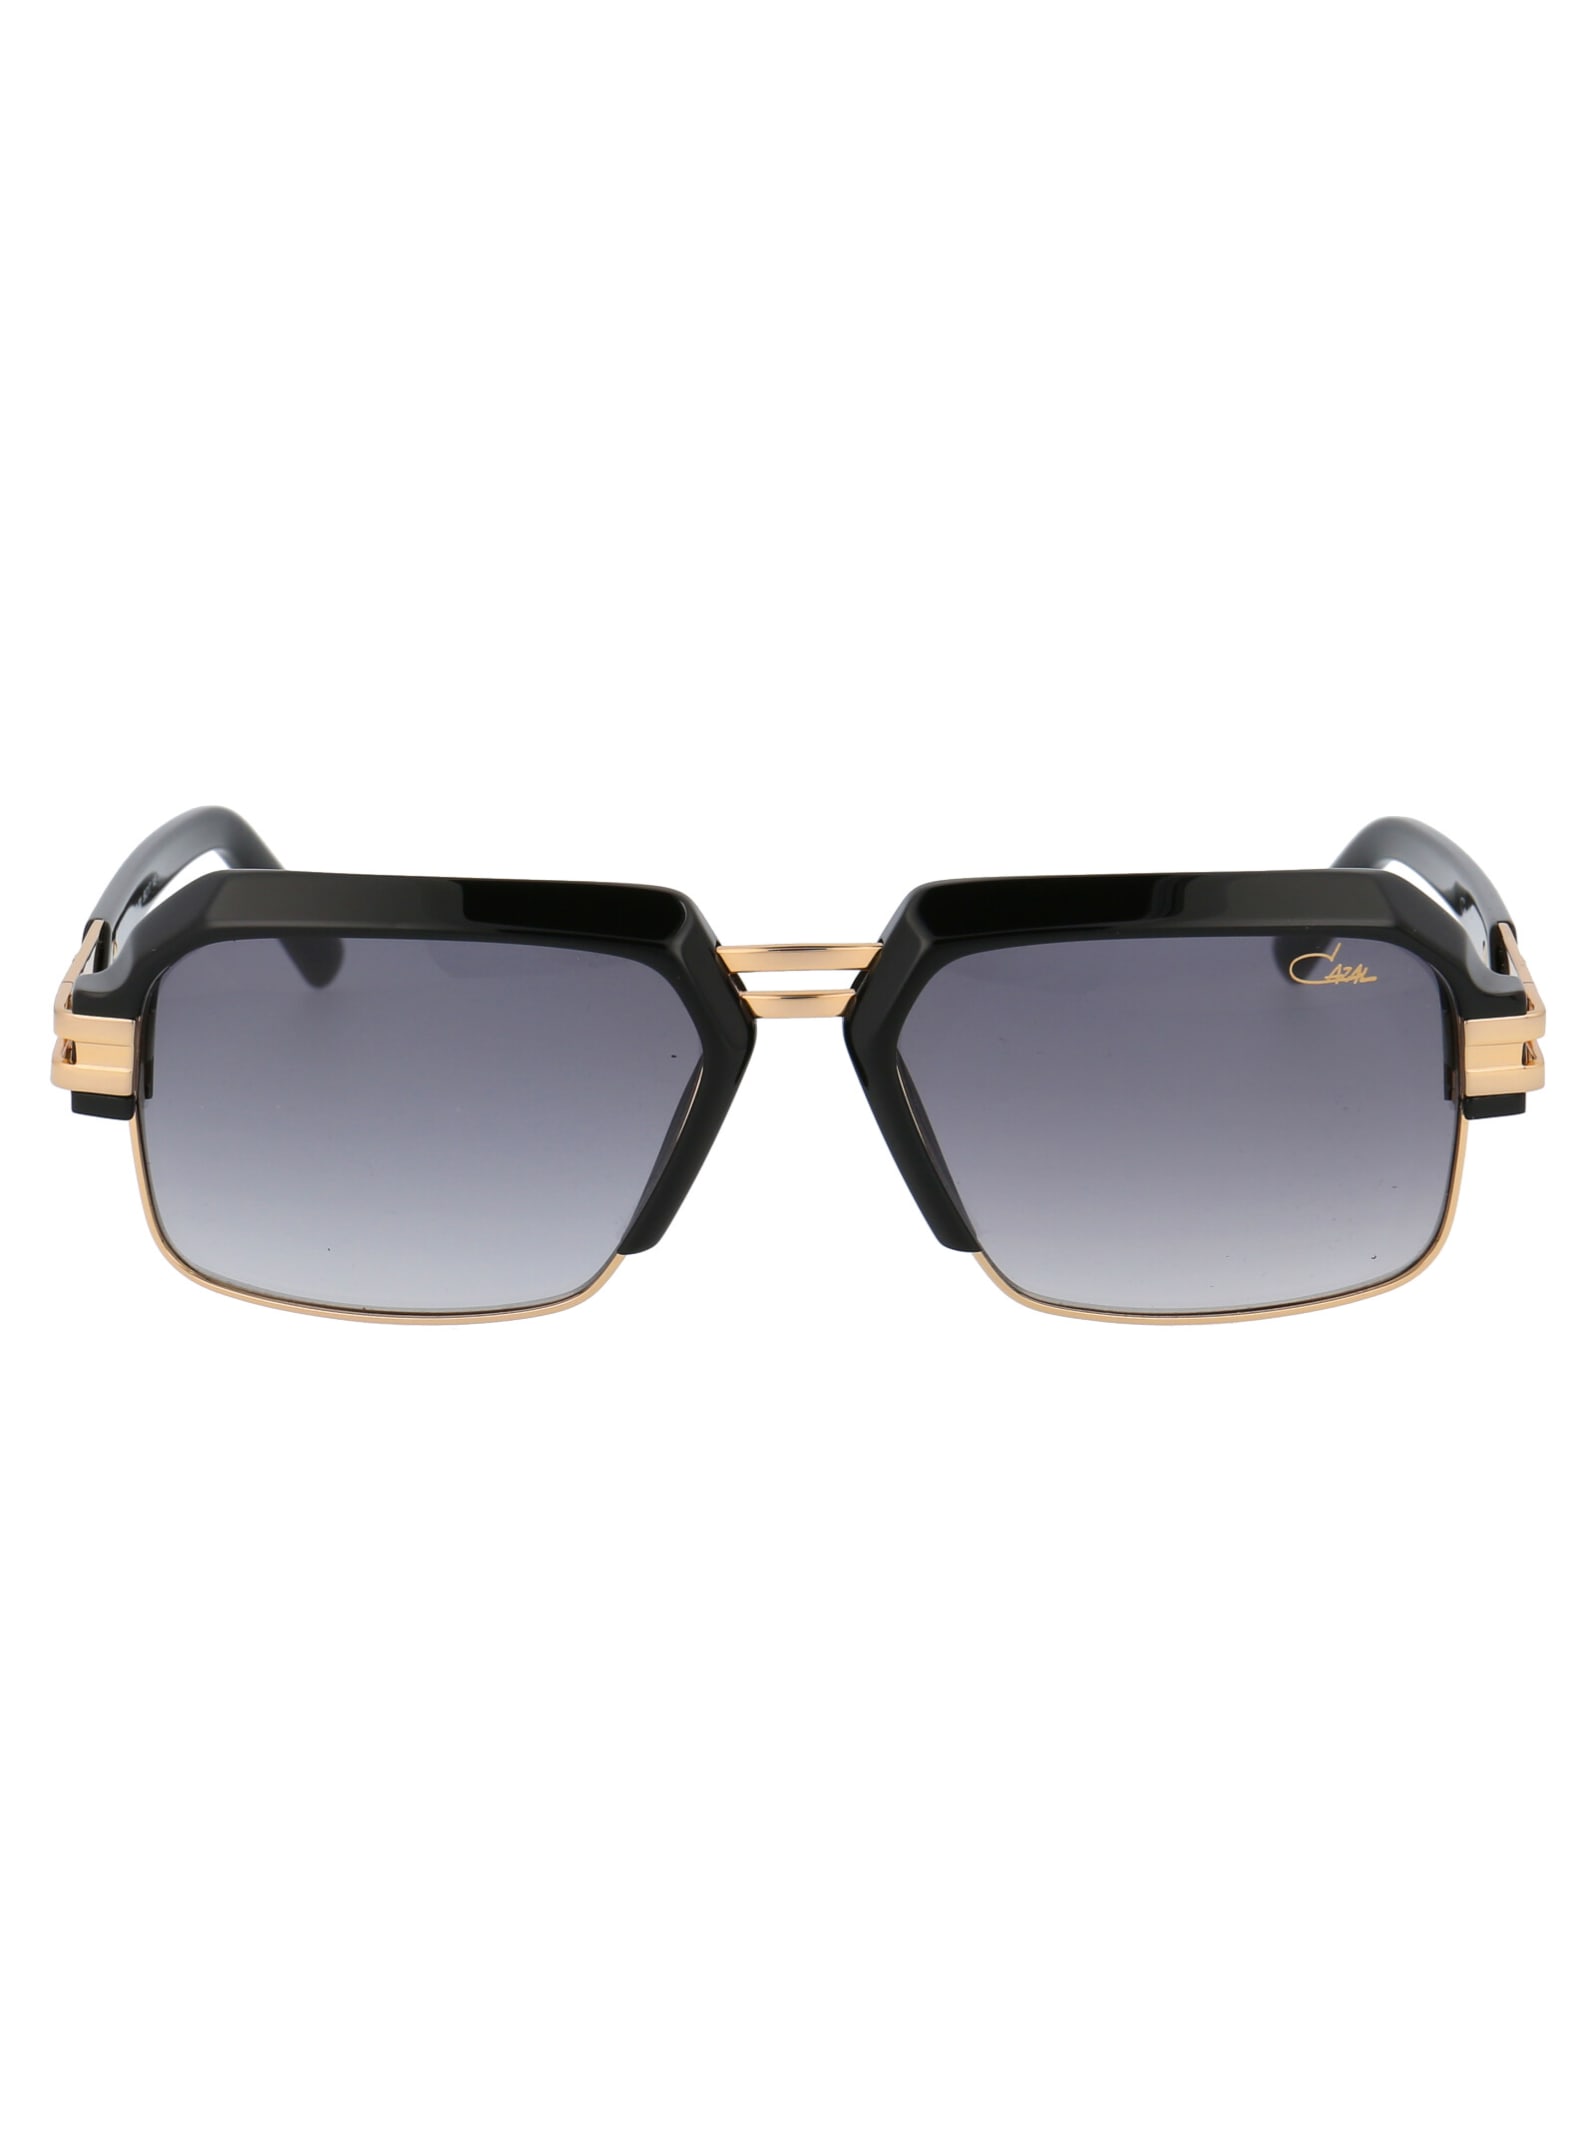 Cazal Mod. 6020/3 Sunglasses In 001 Black